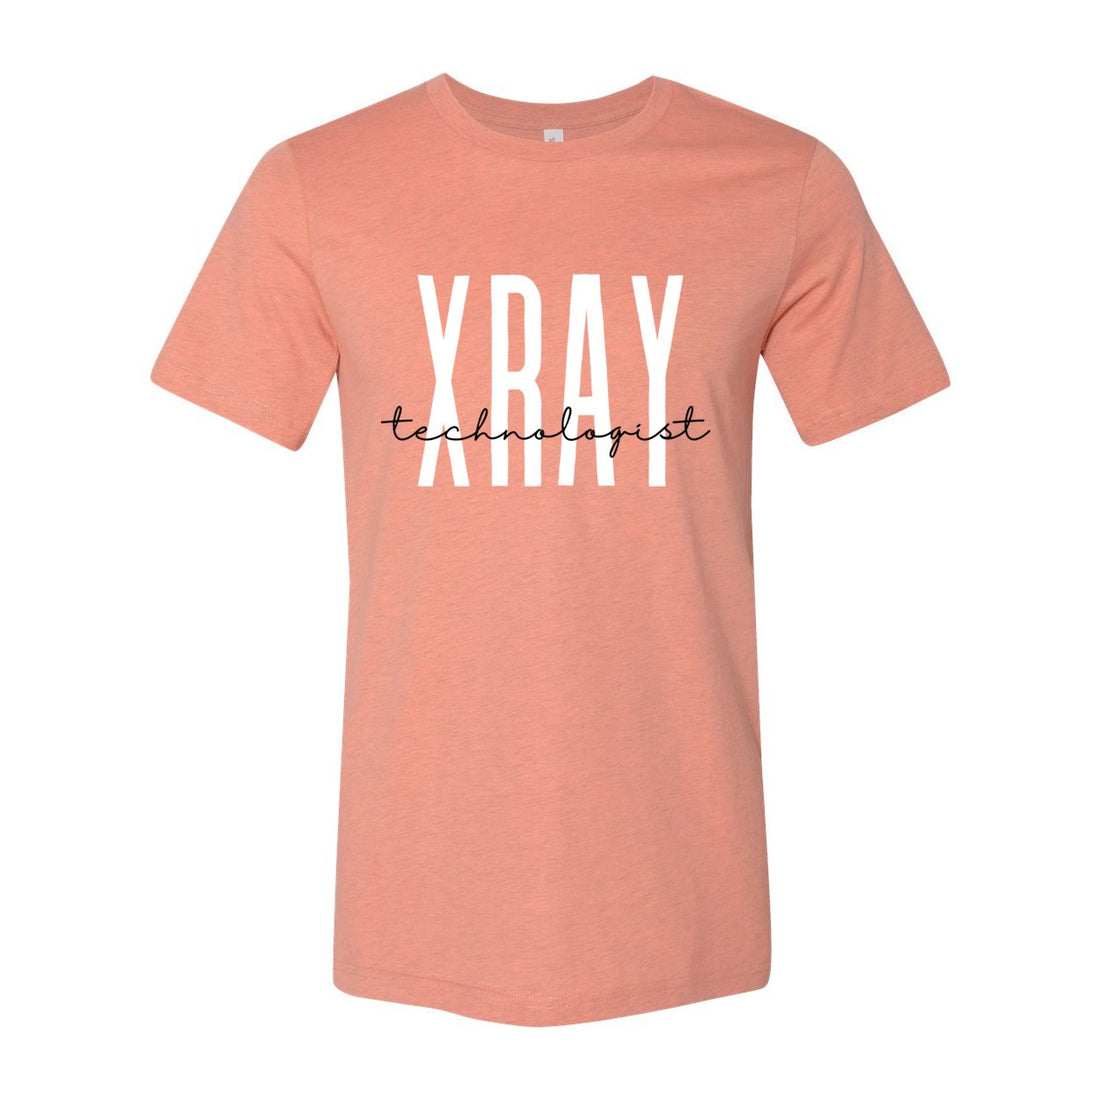 X-Ray Technologist Short Sleeve Jersey Tee - T-Shirts - Positively Sassy - X-Ray Technologist Short Sleeve Jersey Tee